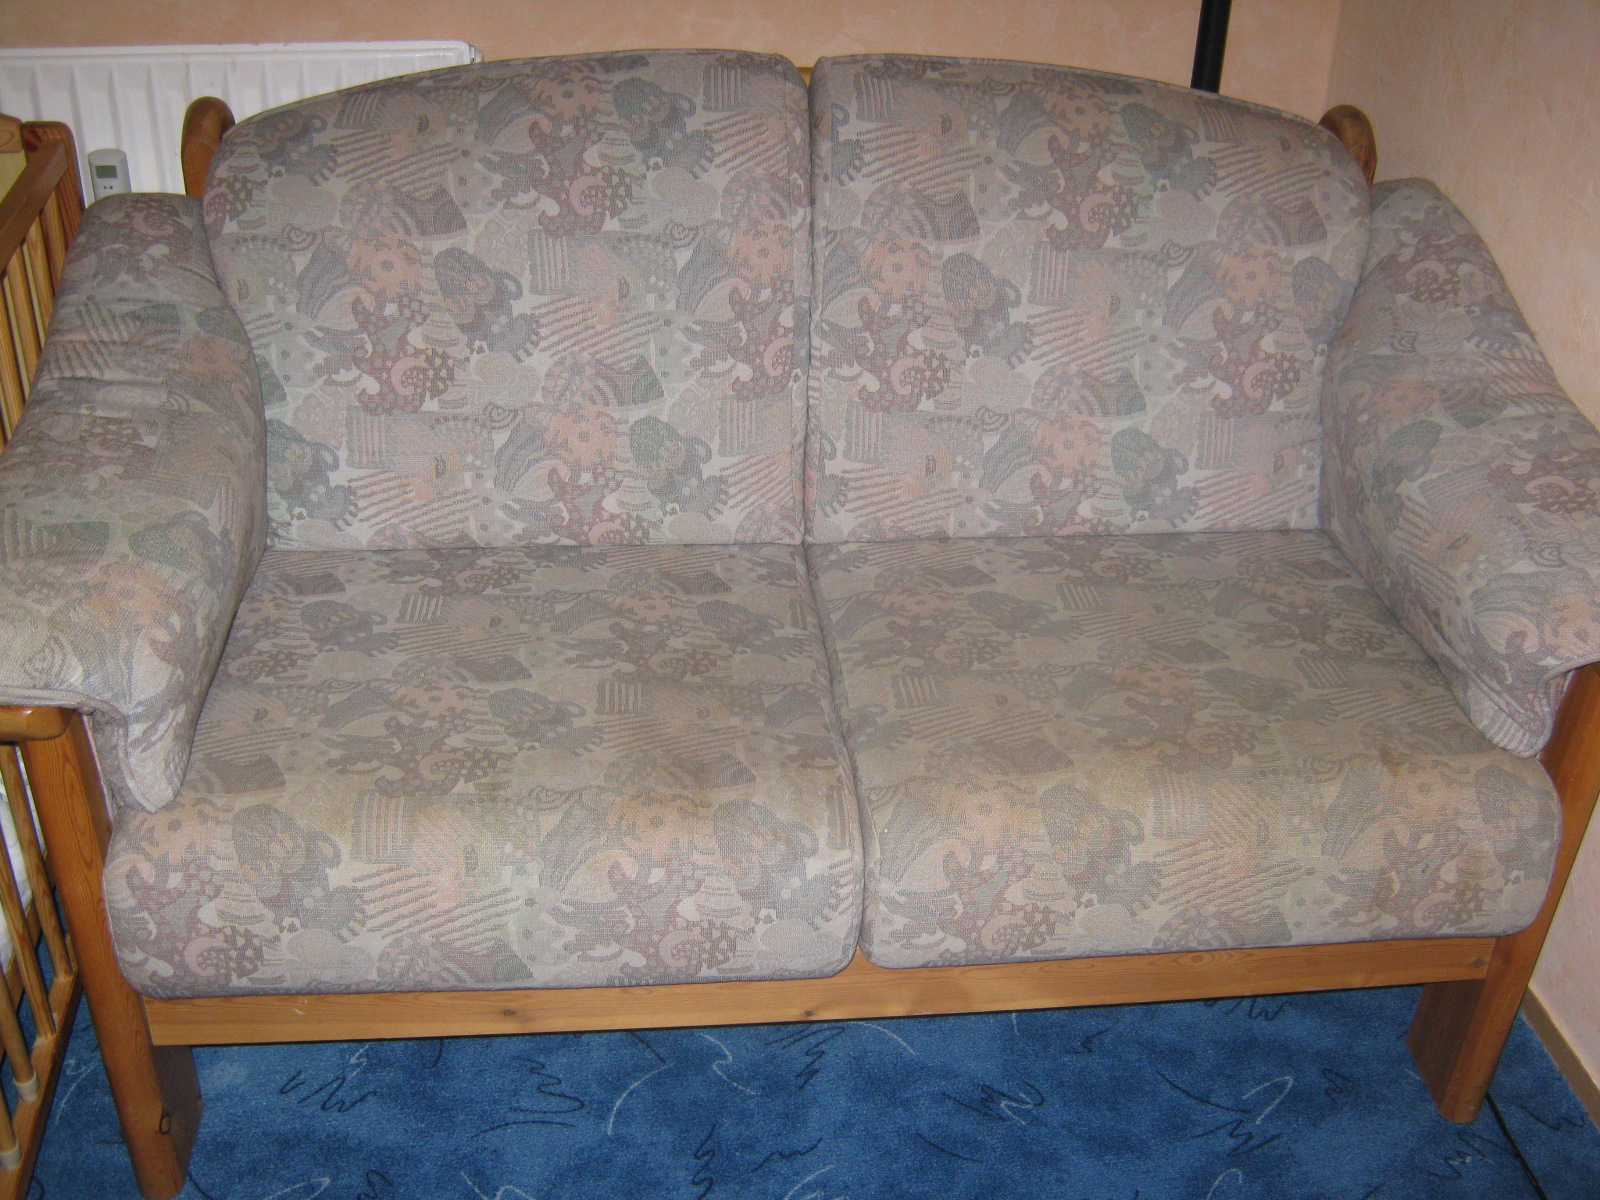 2er sofa für 50,-€